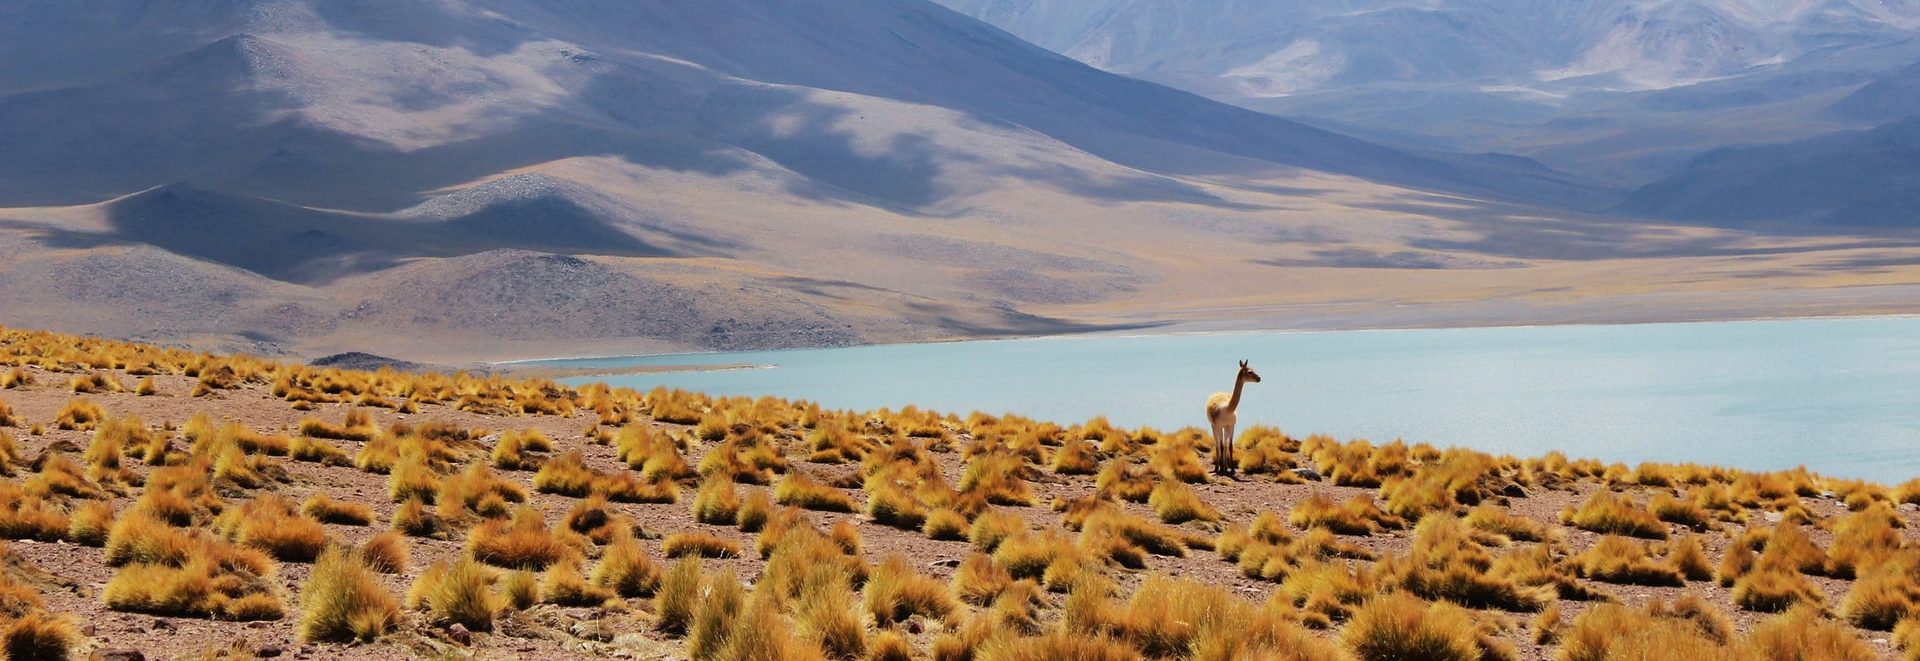 Des programmes télé pour soutenir les entrepreneurs du tourisme rural au Chili